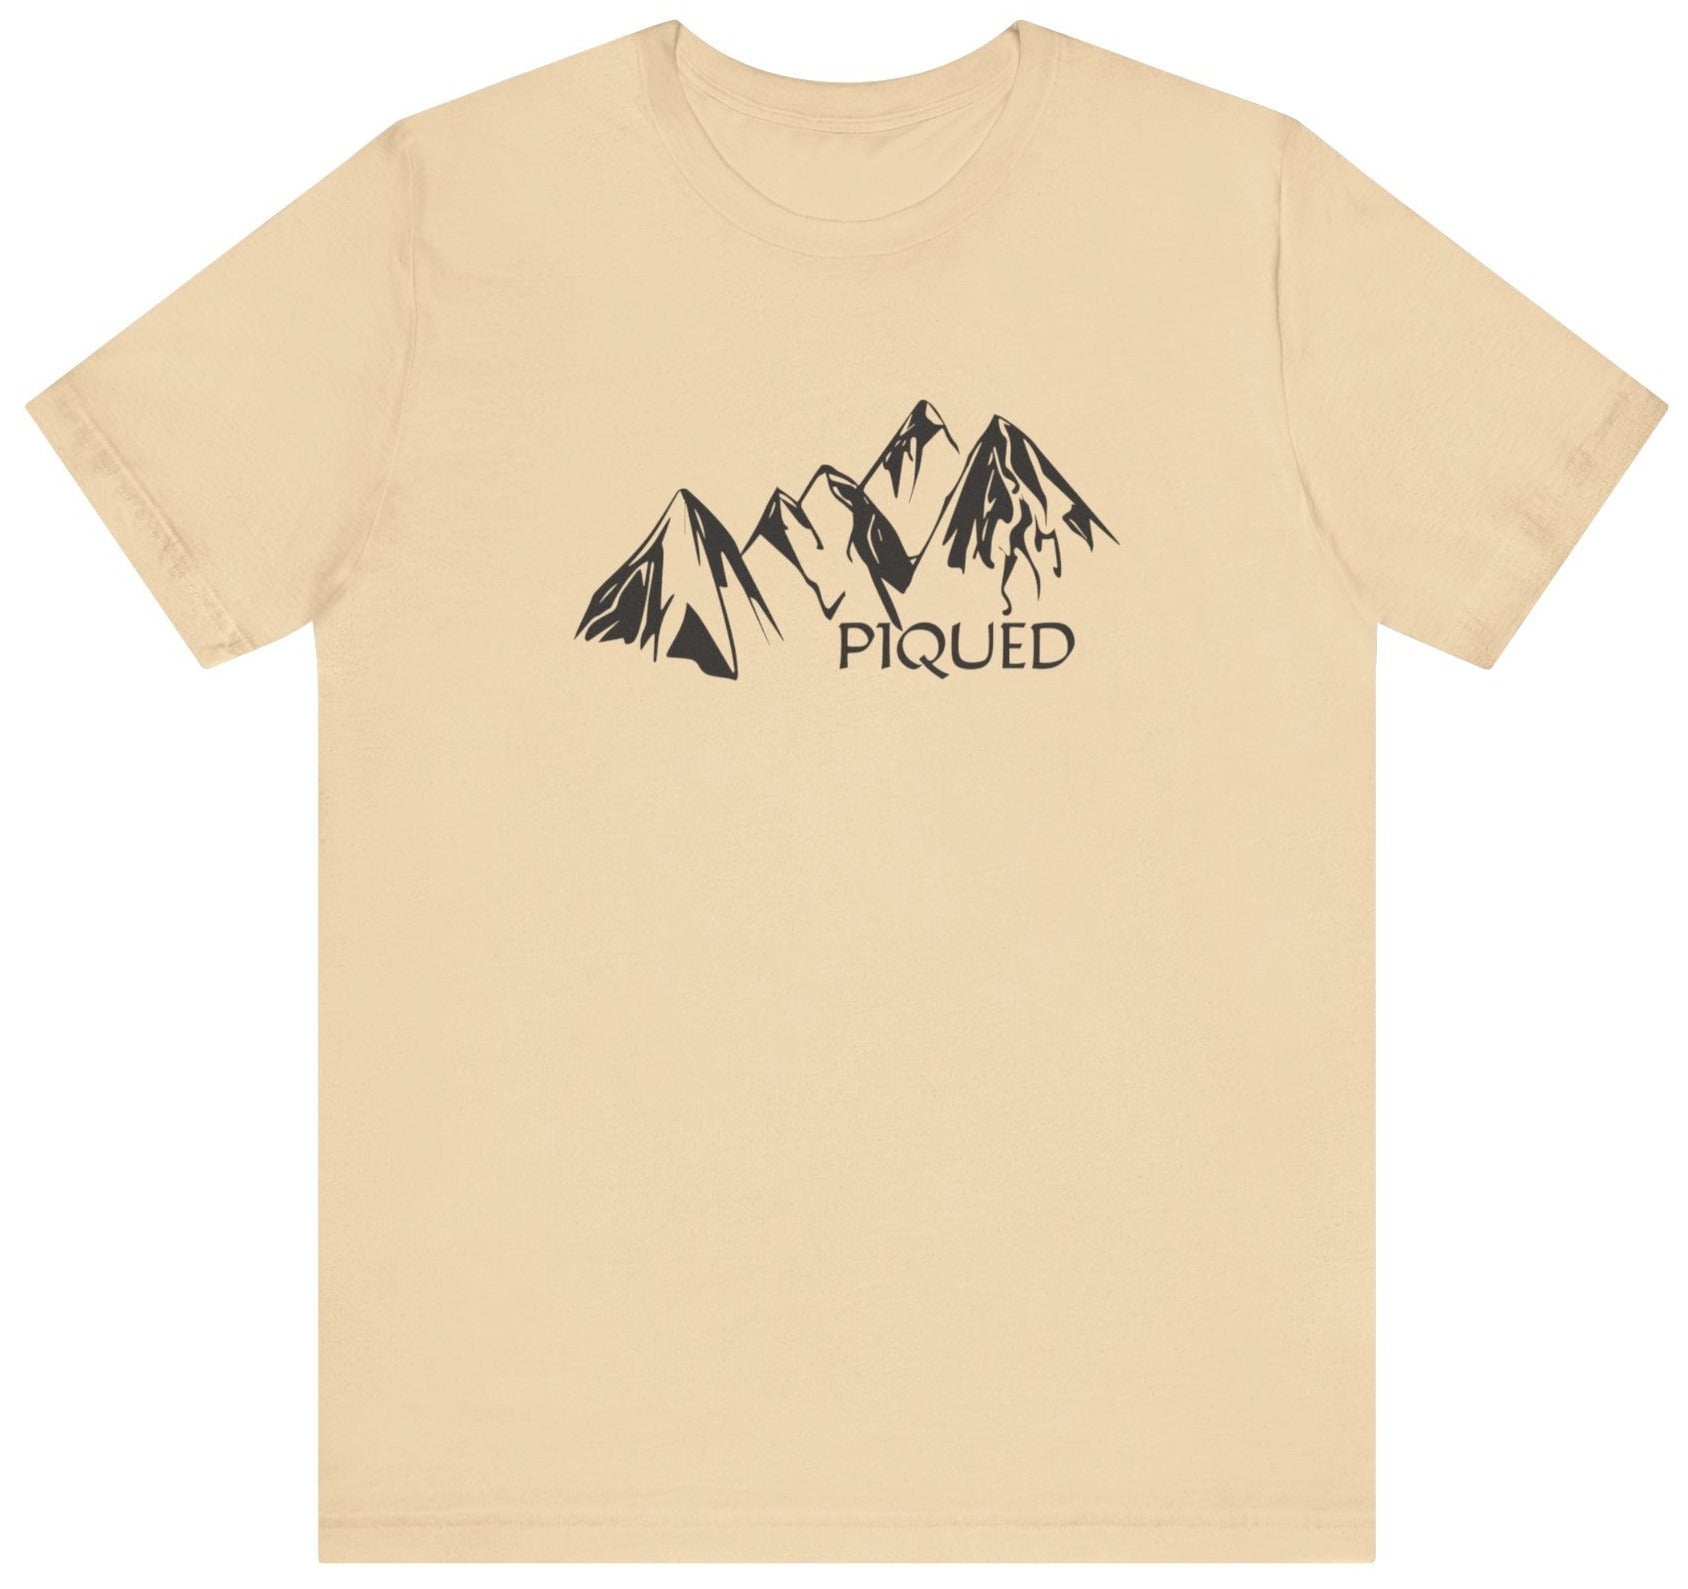 Piqued peaked mountain t shirt